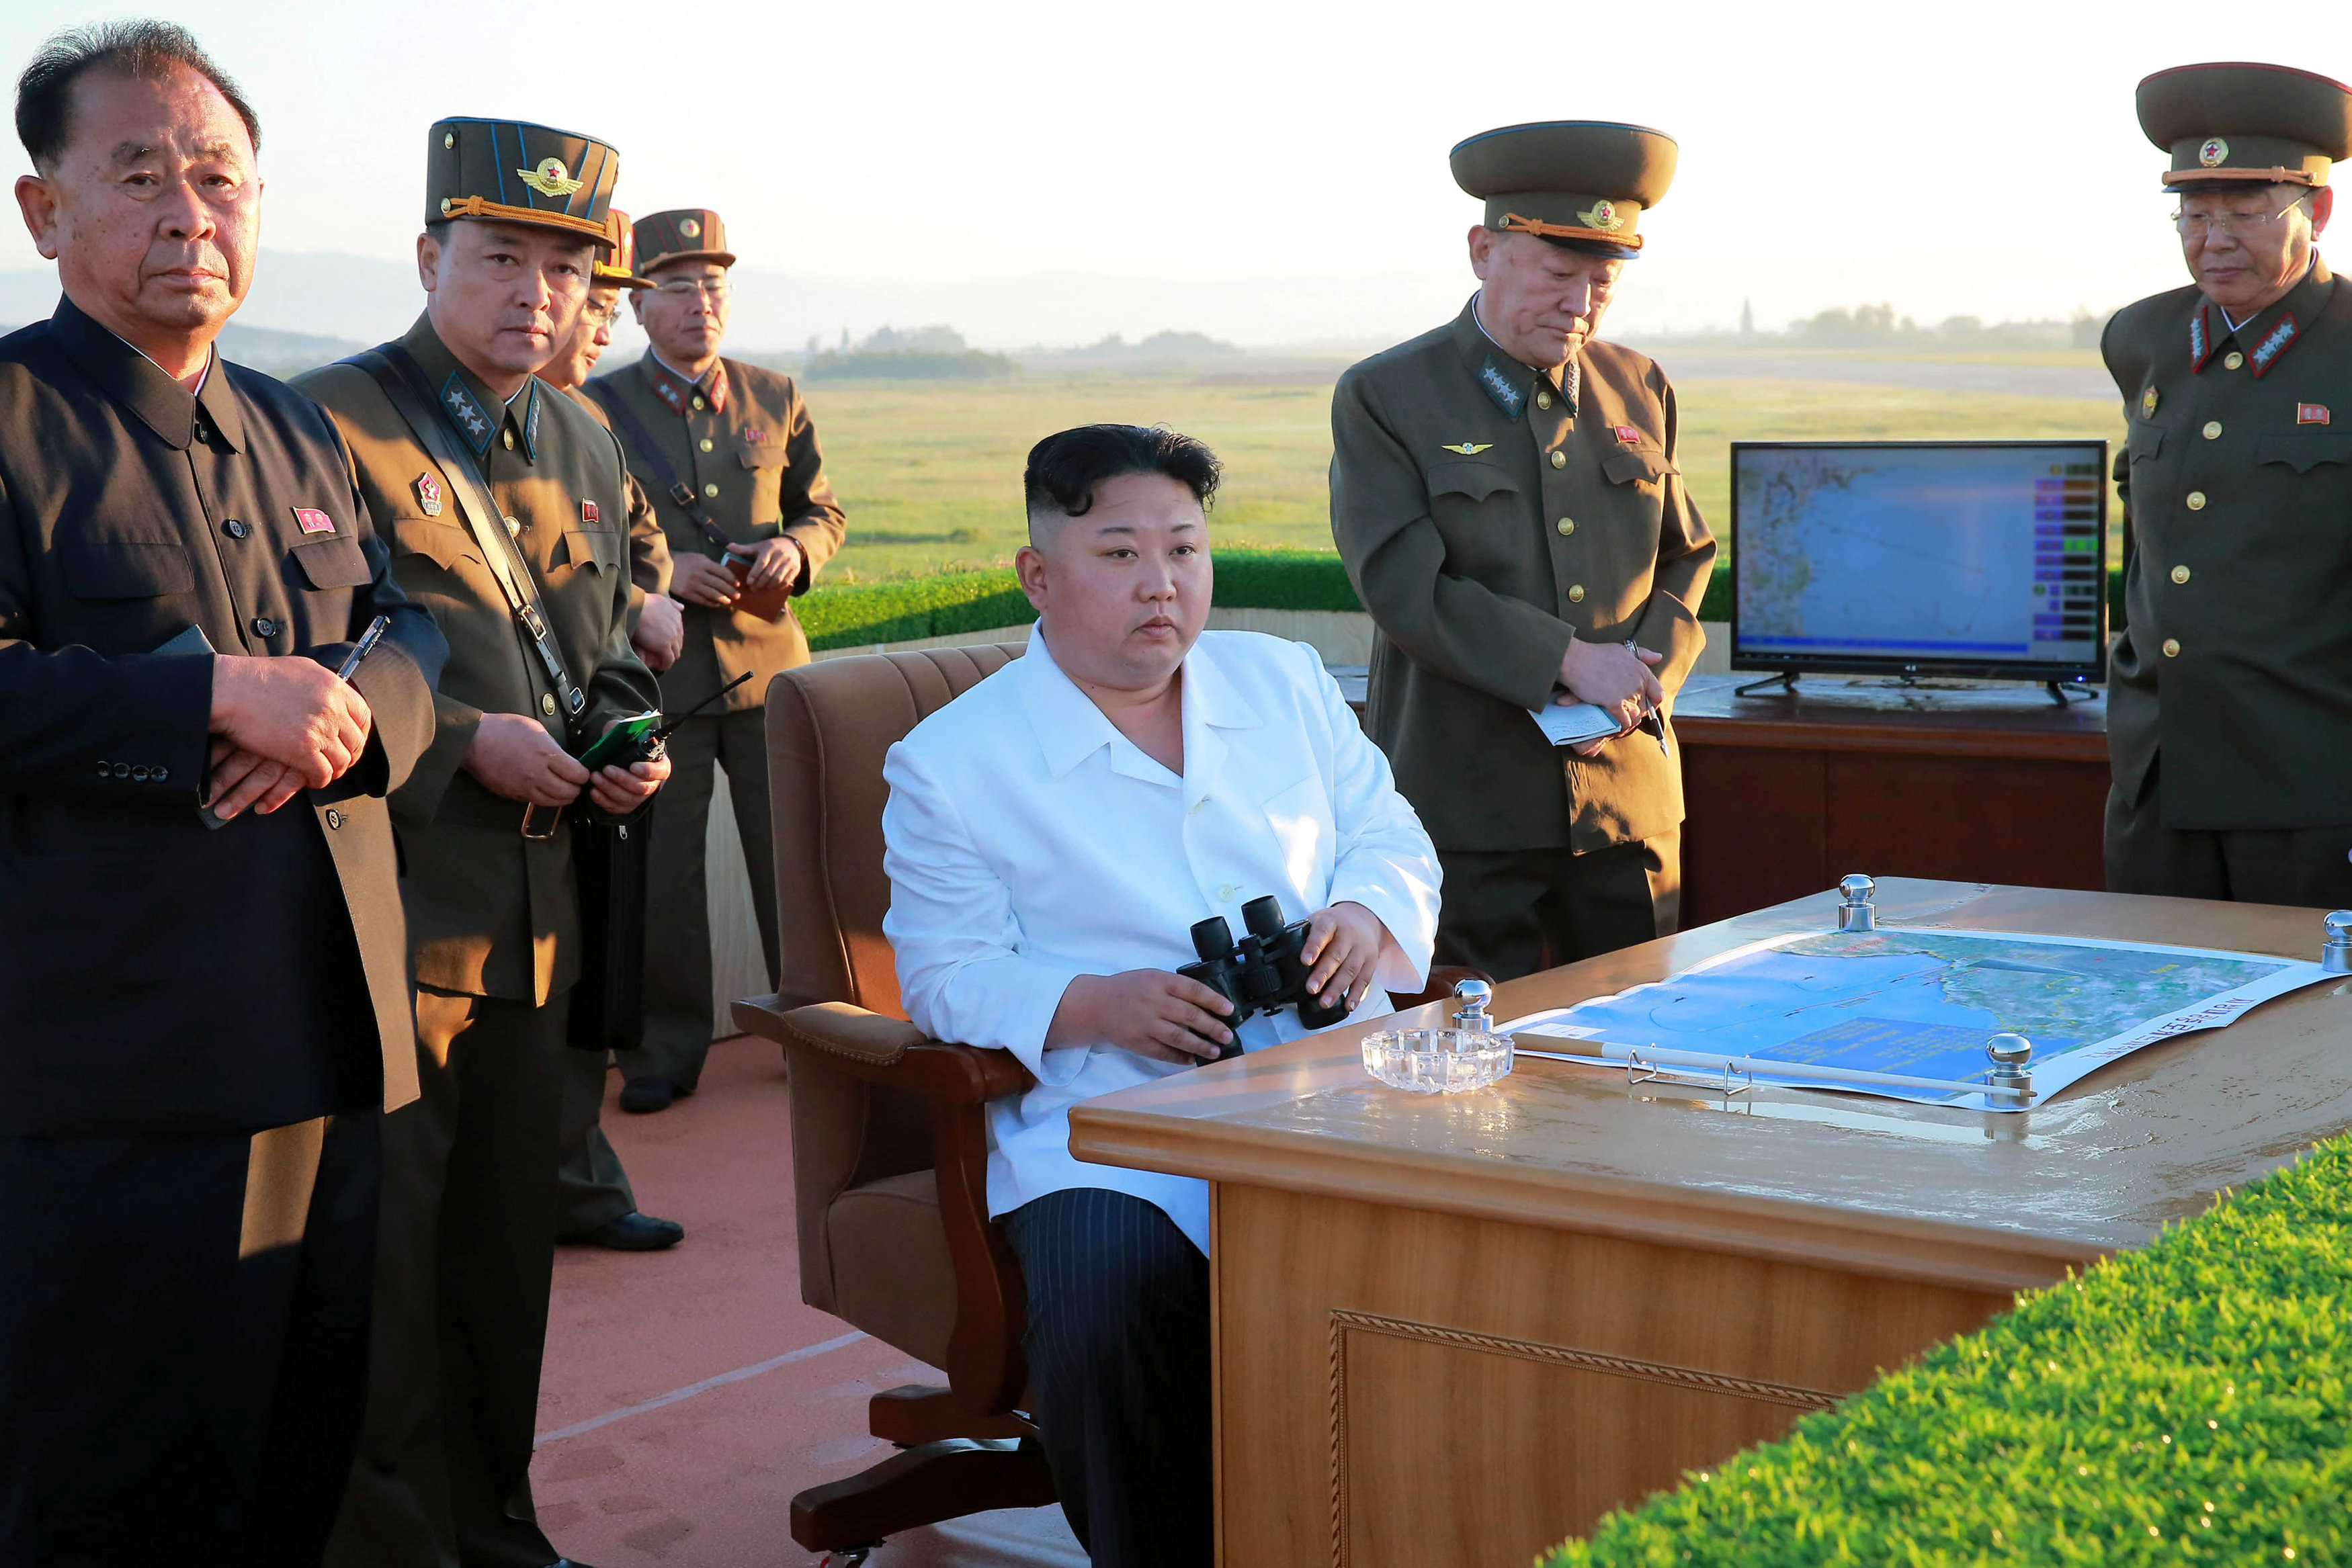 زعيم كوريا الشمالية ينتظر لحطة اطلاق صاروخ مضاد للطائرات